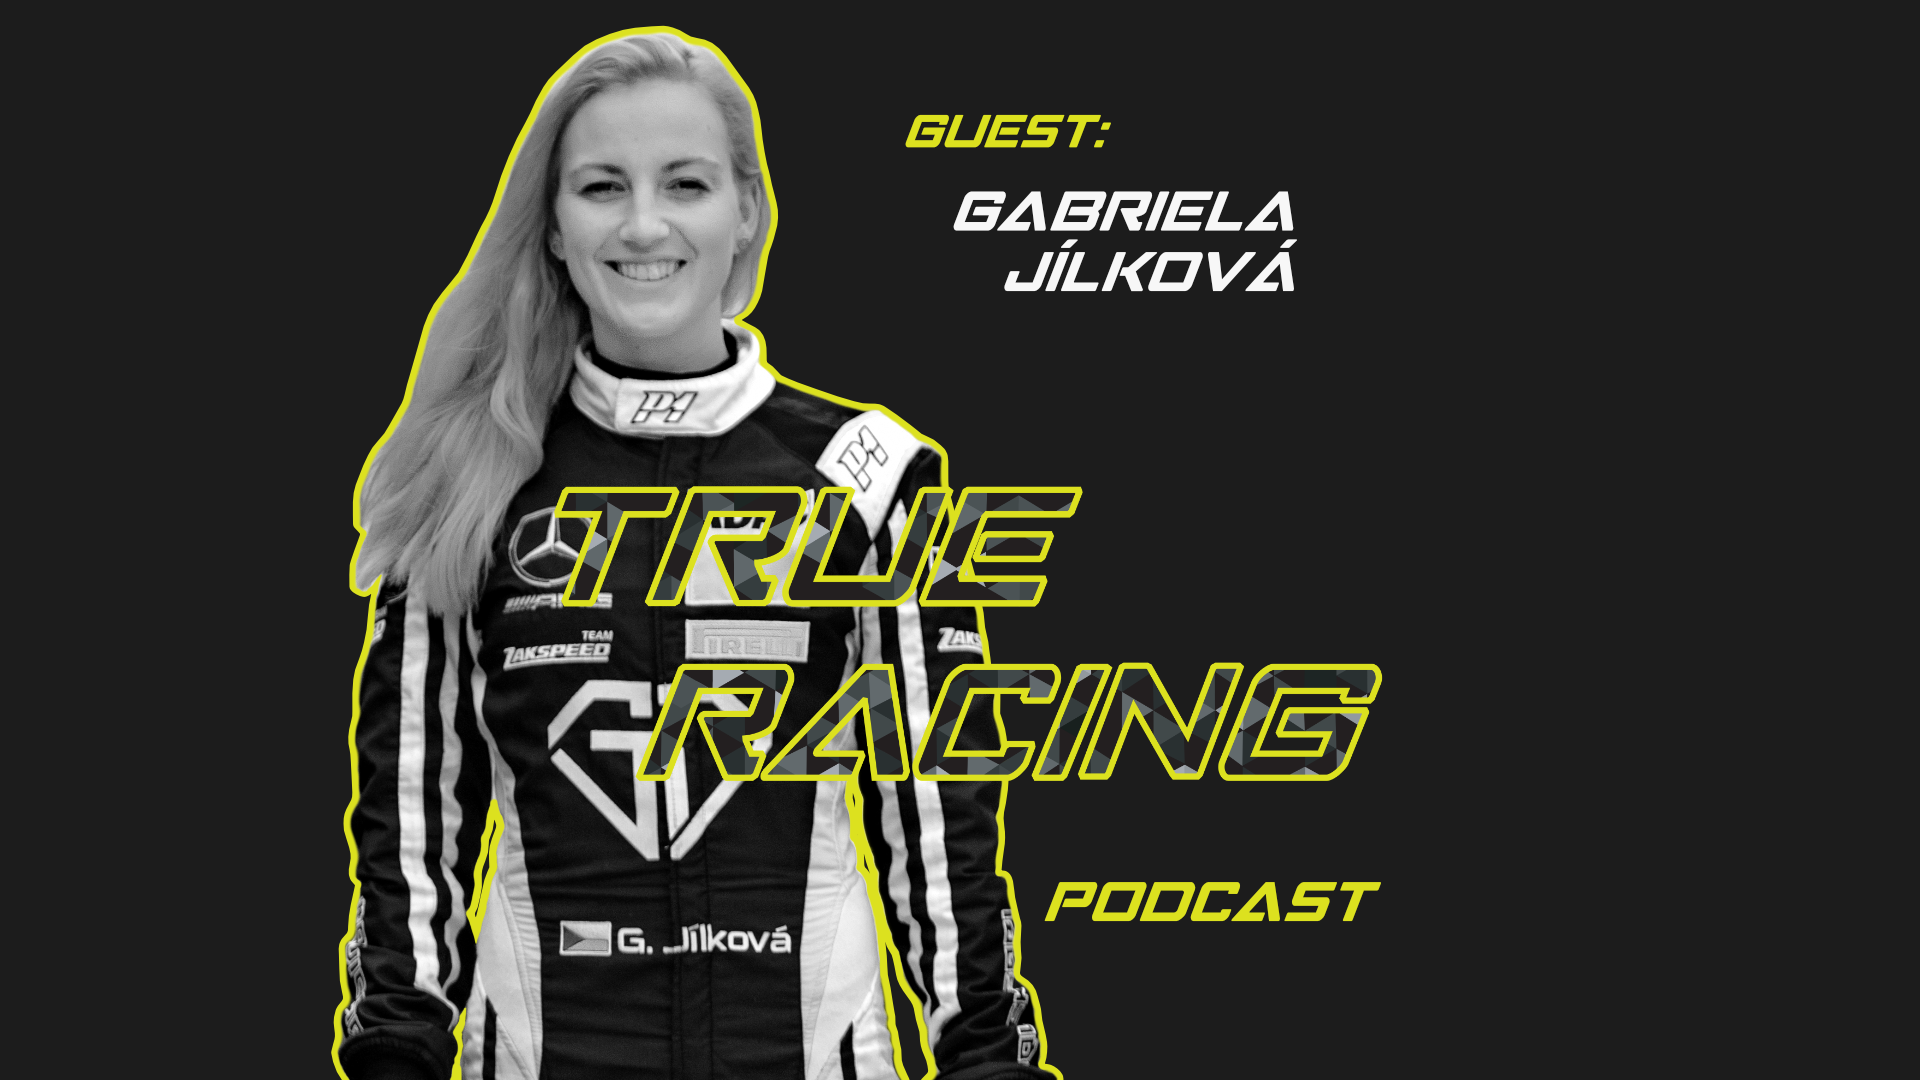 Podcast: Gabriela Jílková